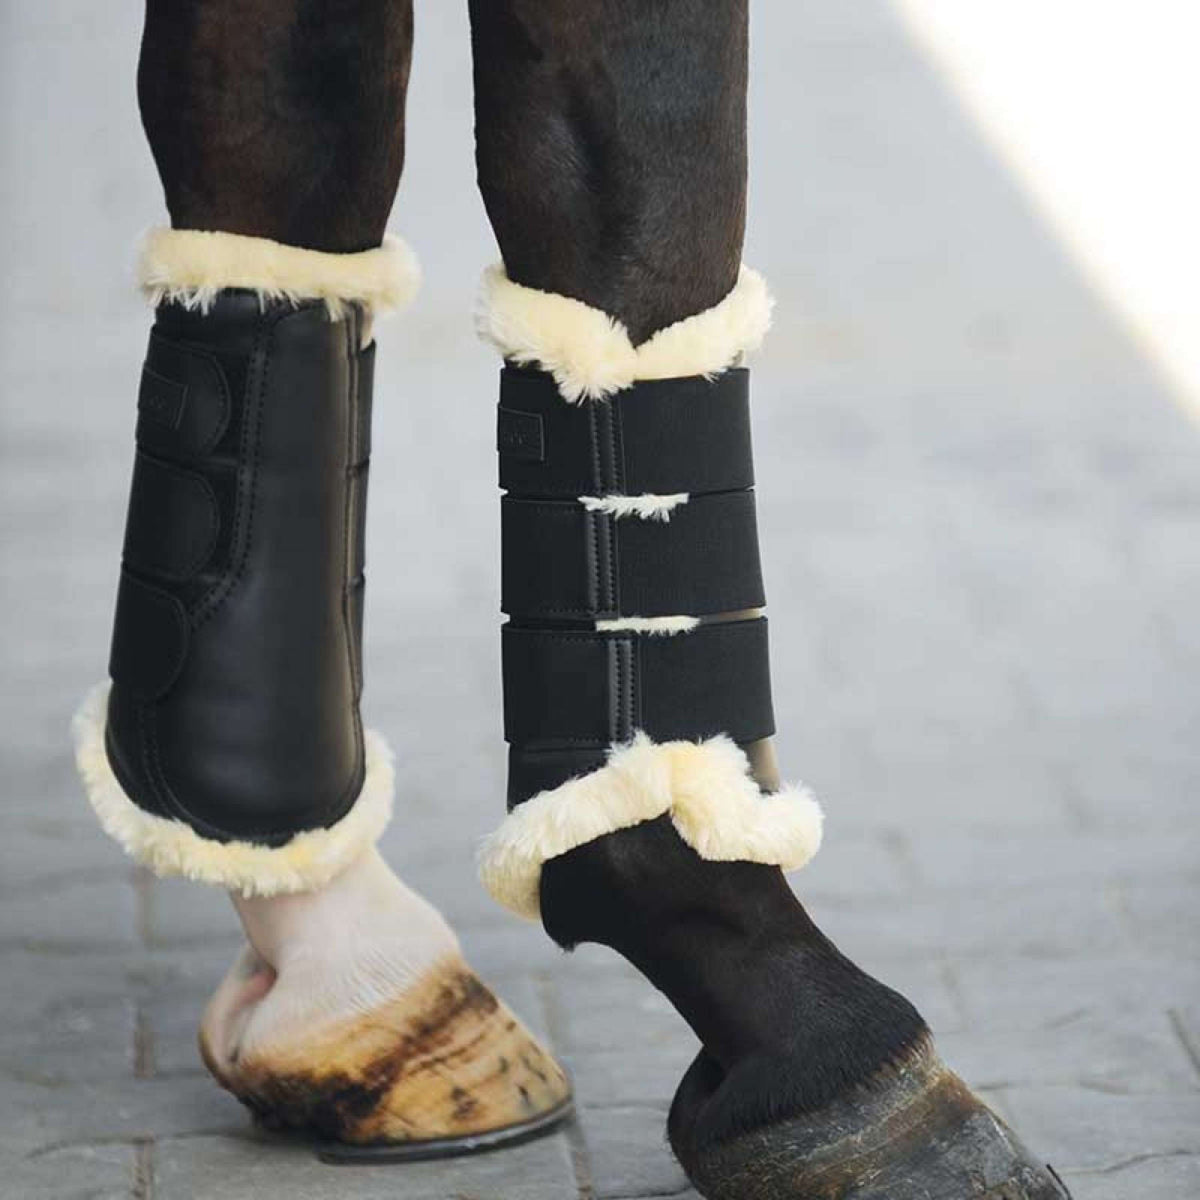 Kavalkade Dressage Boots Show Fausse Fourrure Noir